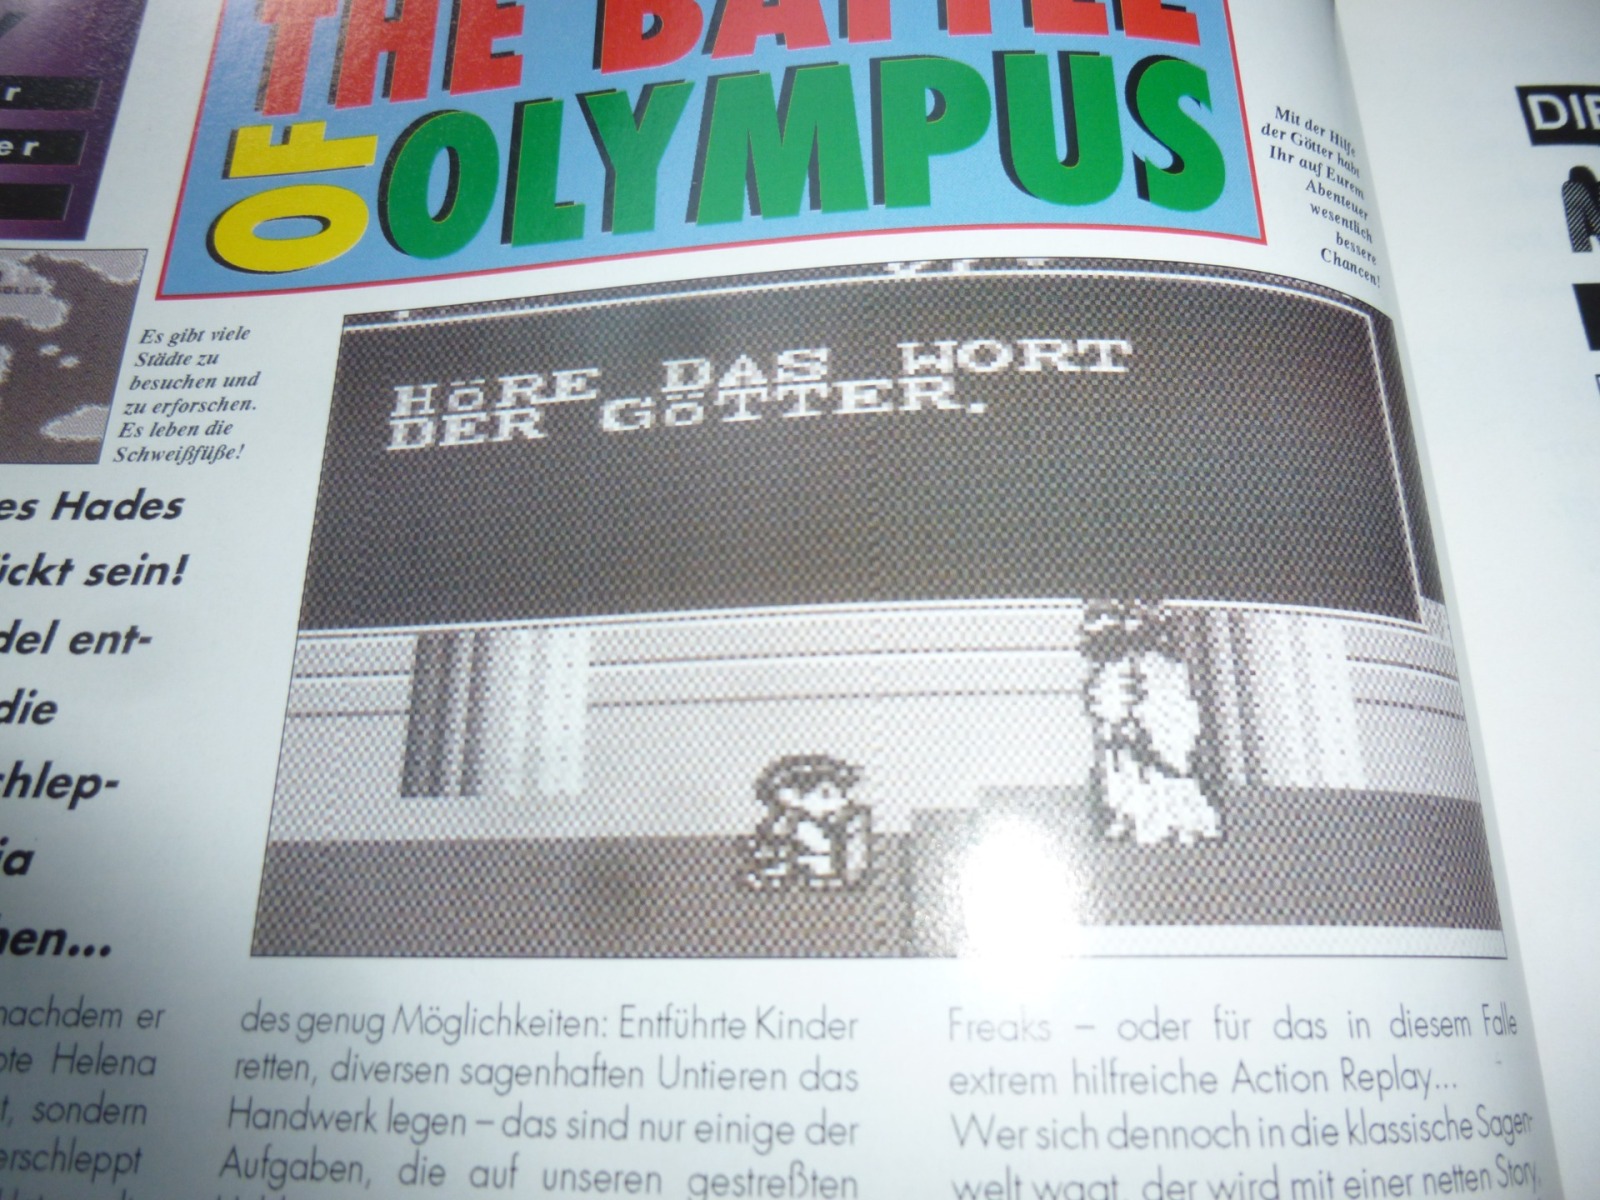 TOTAL Das unabhängige Magazin - 100 Nintendo - Ausgabe 12/93 1993 20